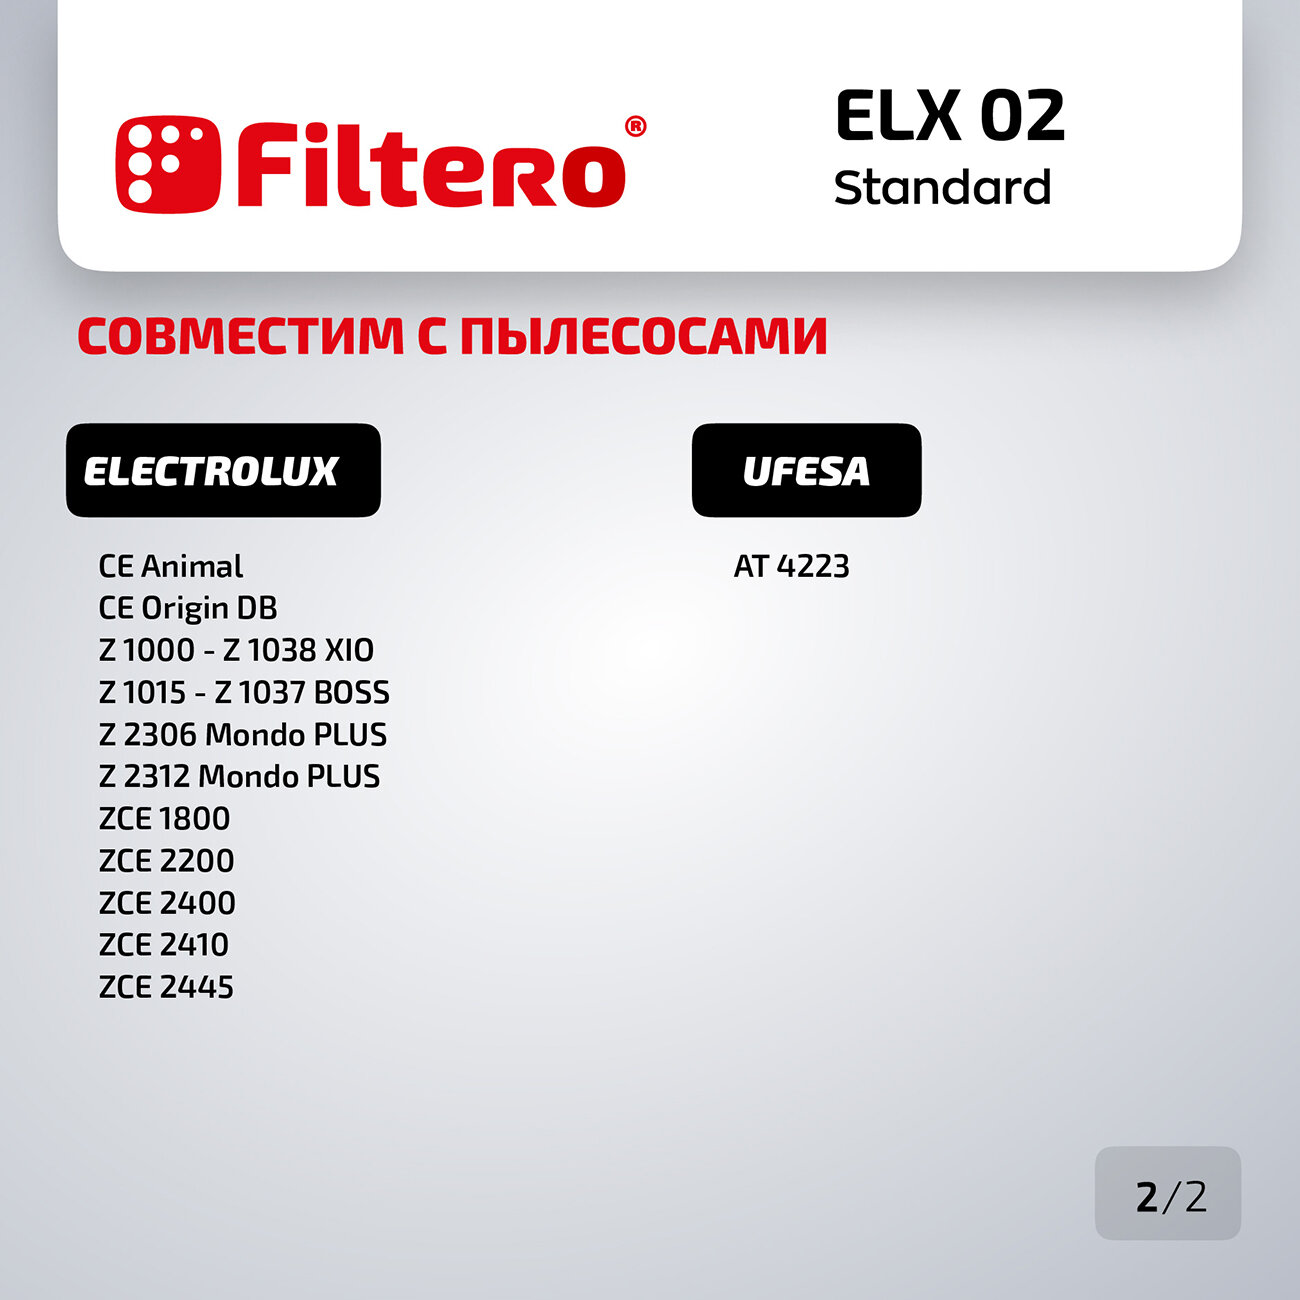 Мешки-пылесборники Filtero ELX 02 Standard, бумажные, для пылесосов ELECTROLUX, ZANUSSI, 5 шт. + фильтр.